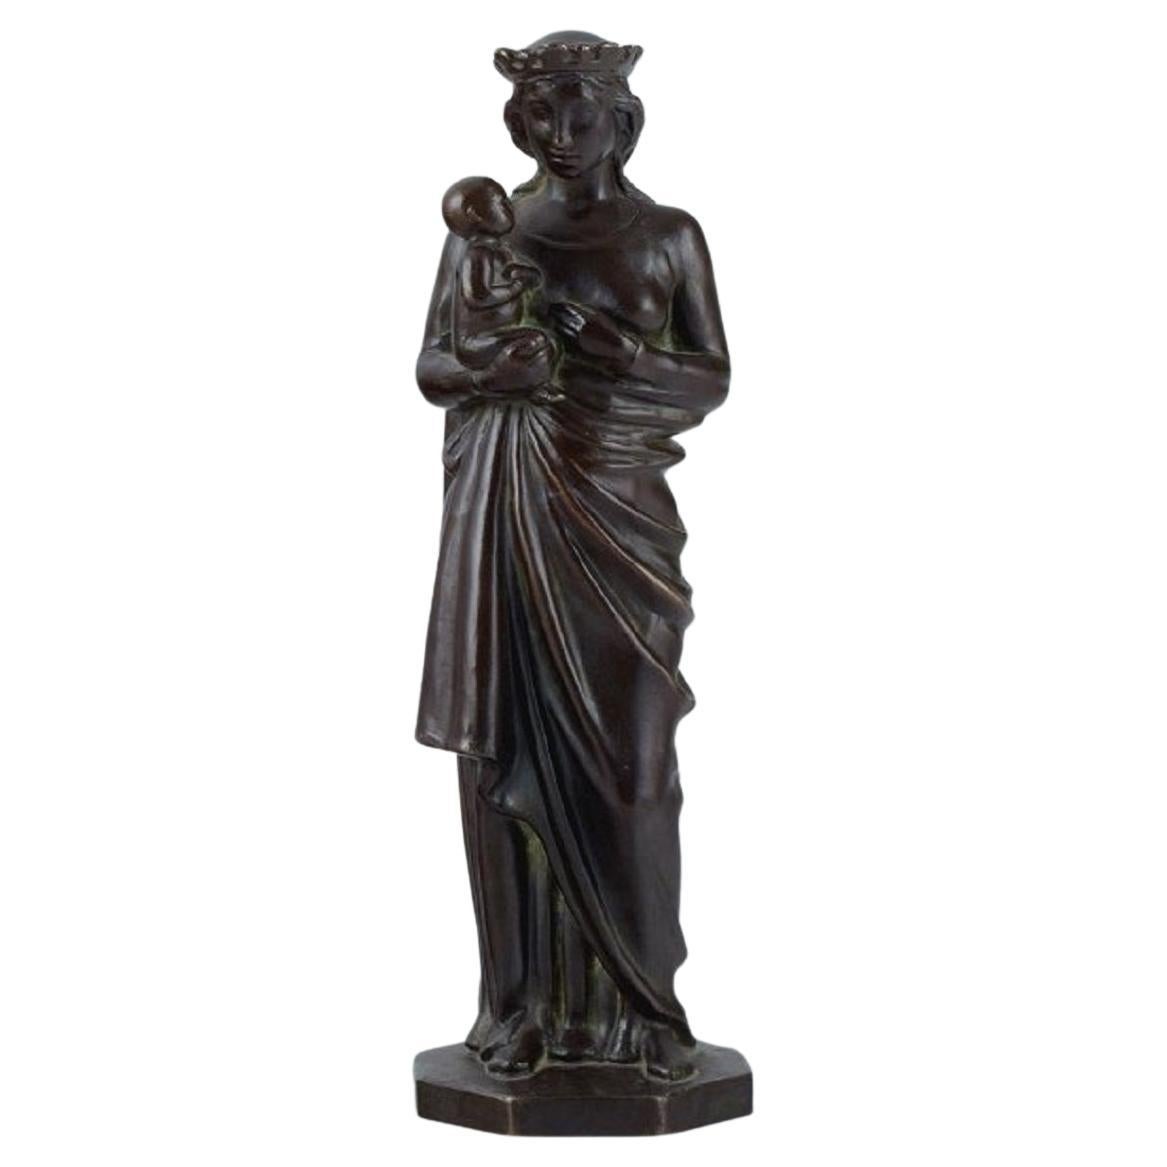 Johan G. C. Galster, sculpteur danois. Figure en bronze de la Vierge Marie et de l'enfant.